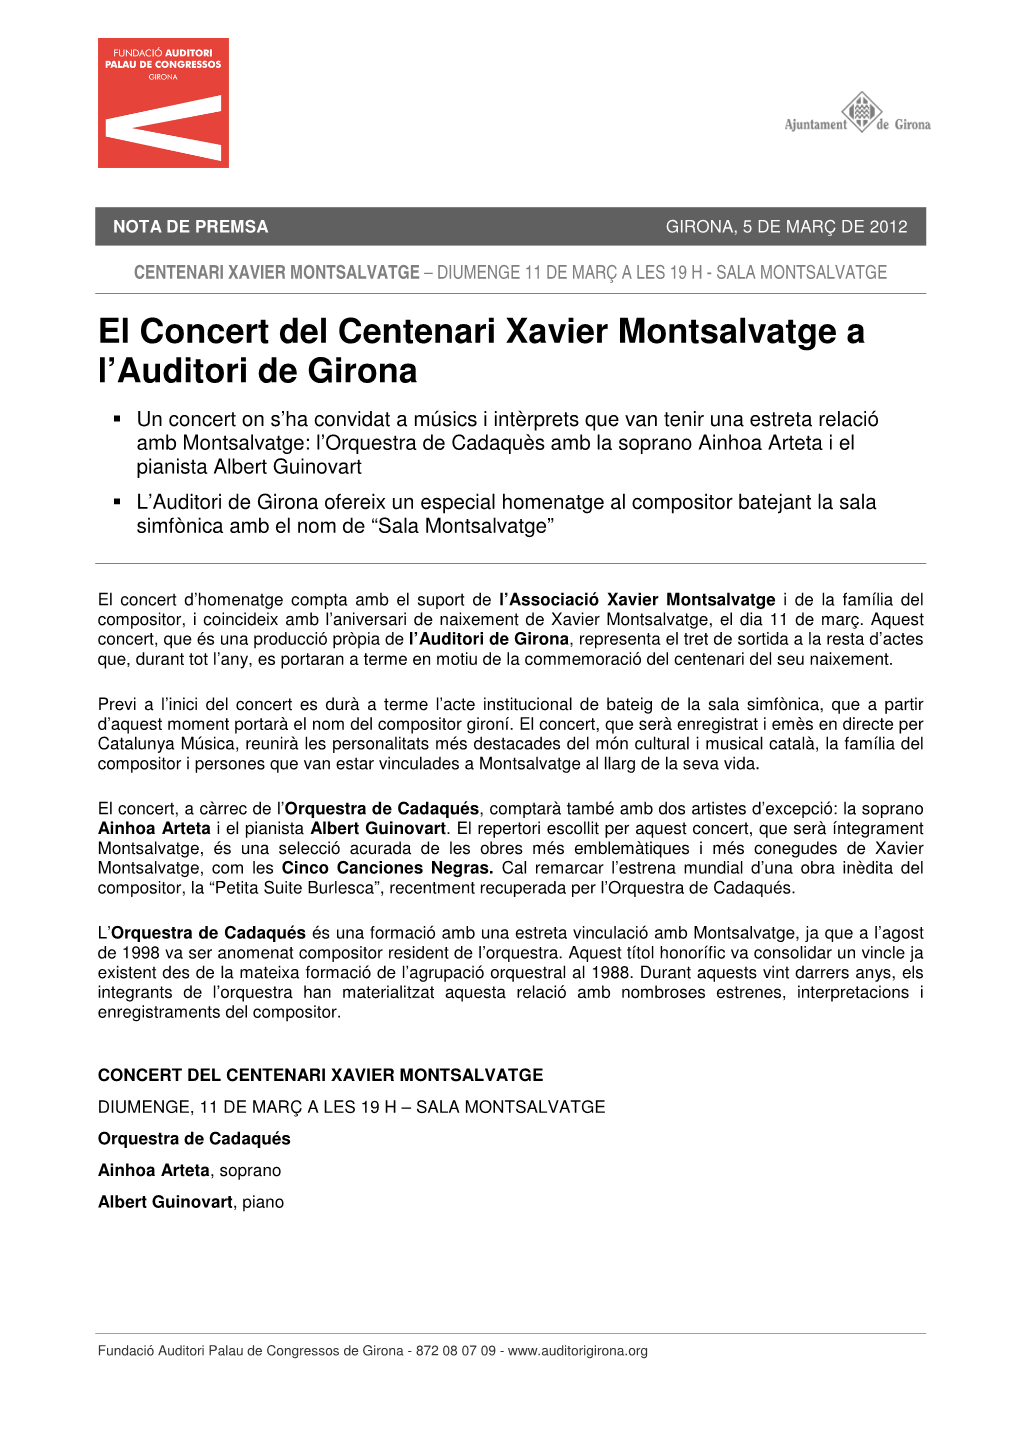 El Concert Del Centenari Xavier Montsalvatge a L'auditori De Girona